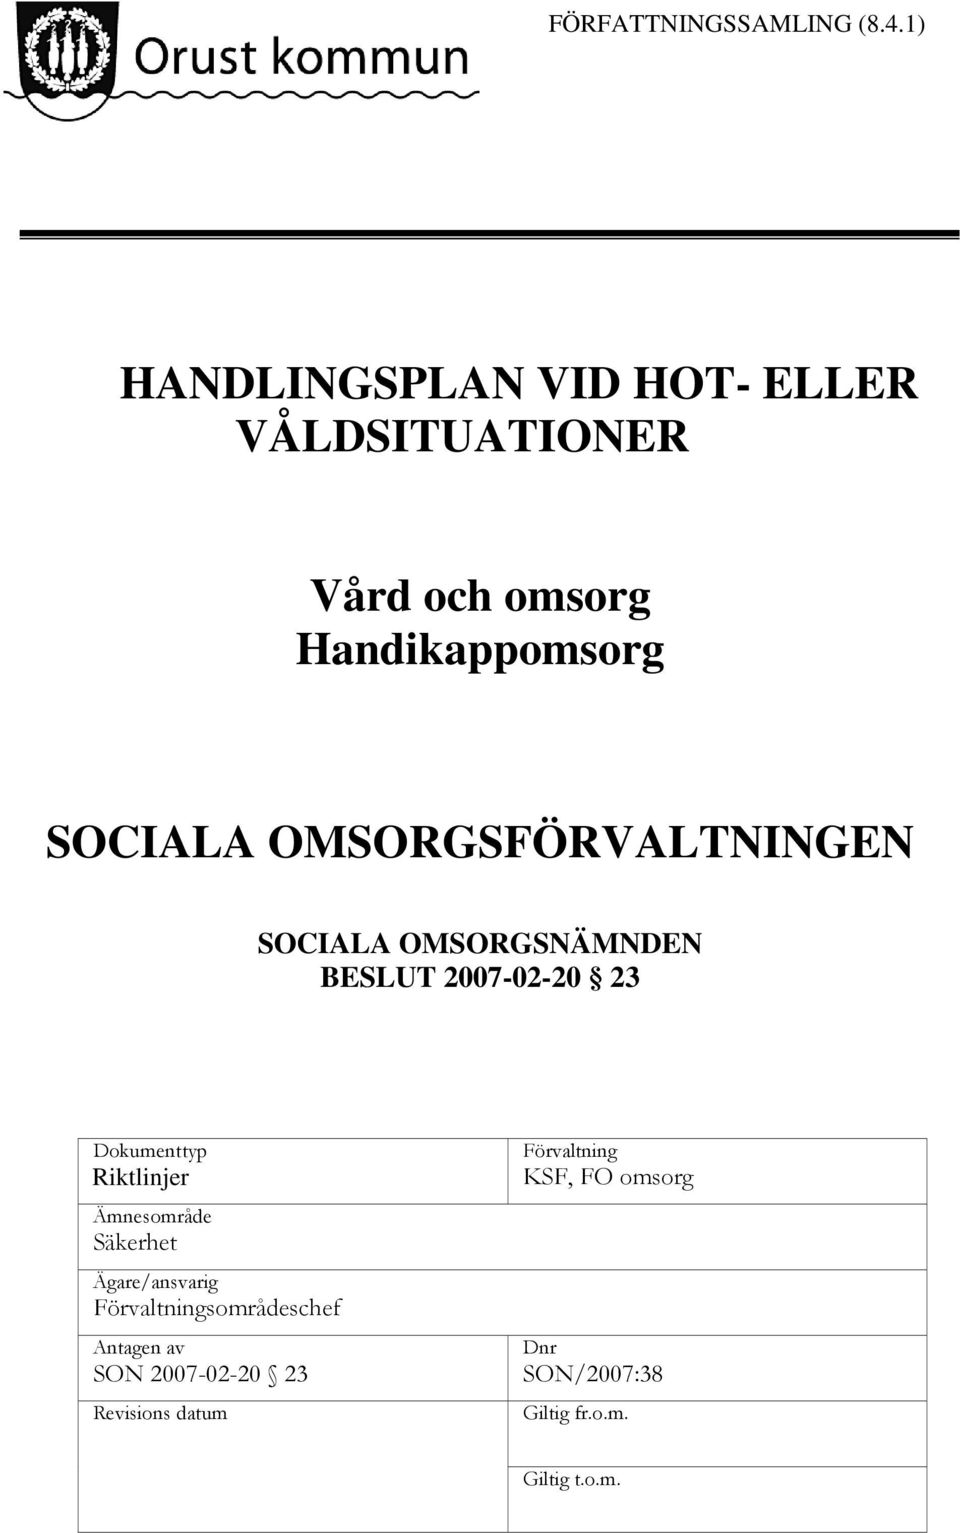 OMSORGSFÖRVALTNINGEN SOCIALA OMSORGSNÄMNDEN BESLUT 2007-02-20 23 Dokumenttyp Riktlinjer